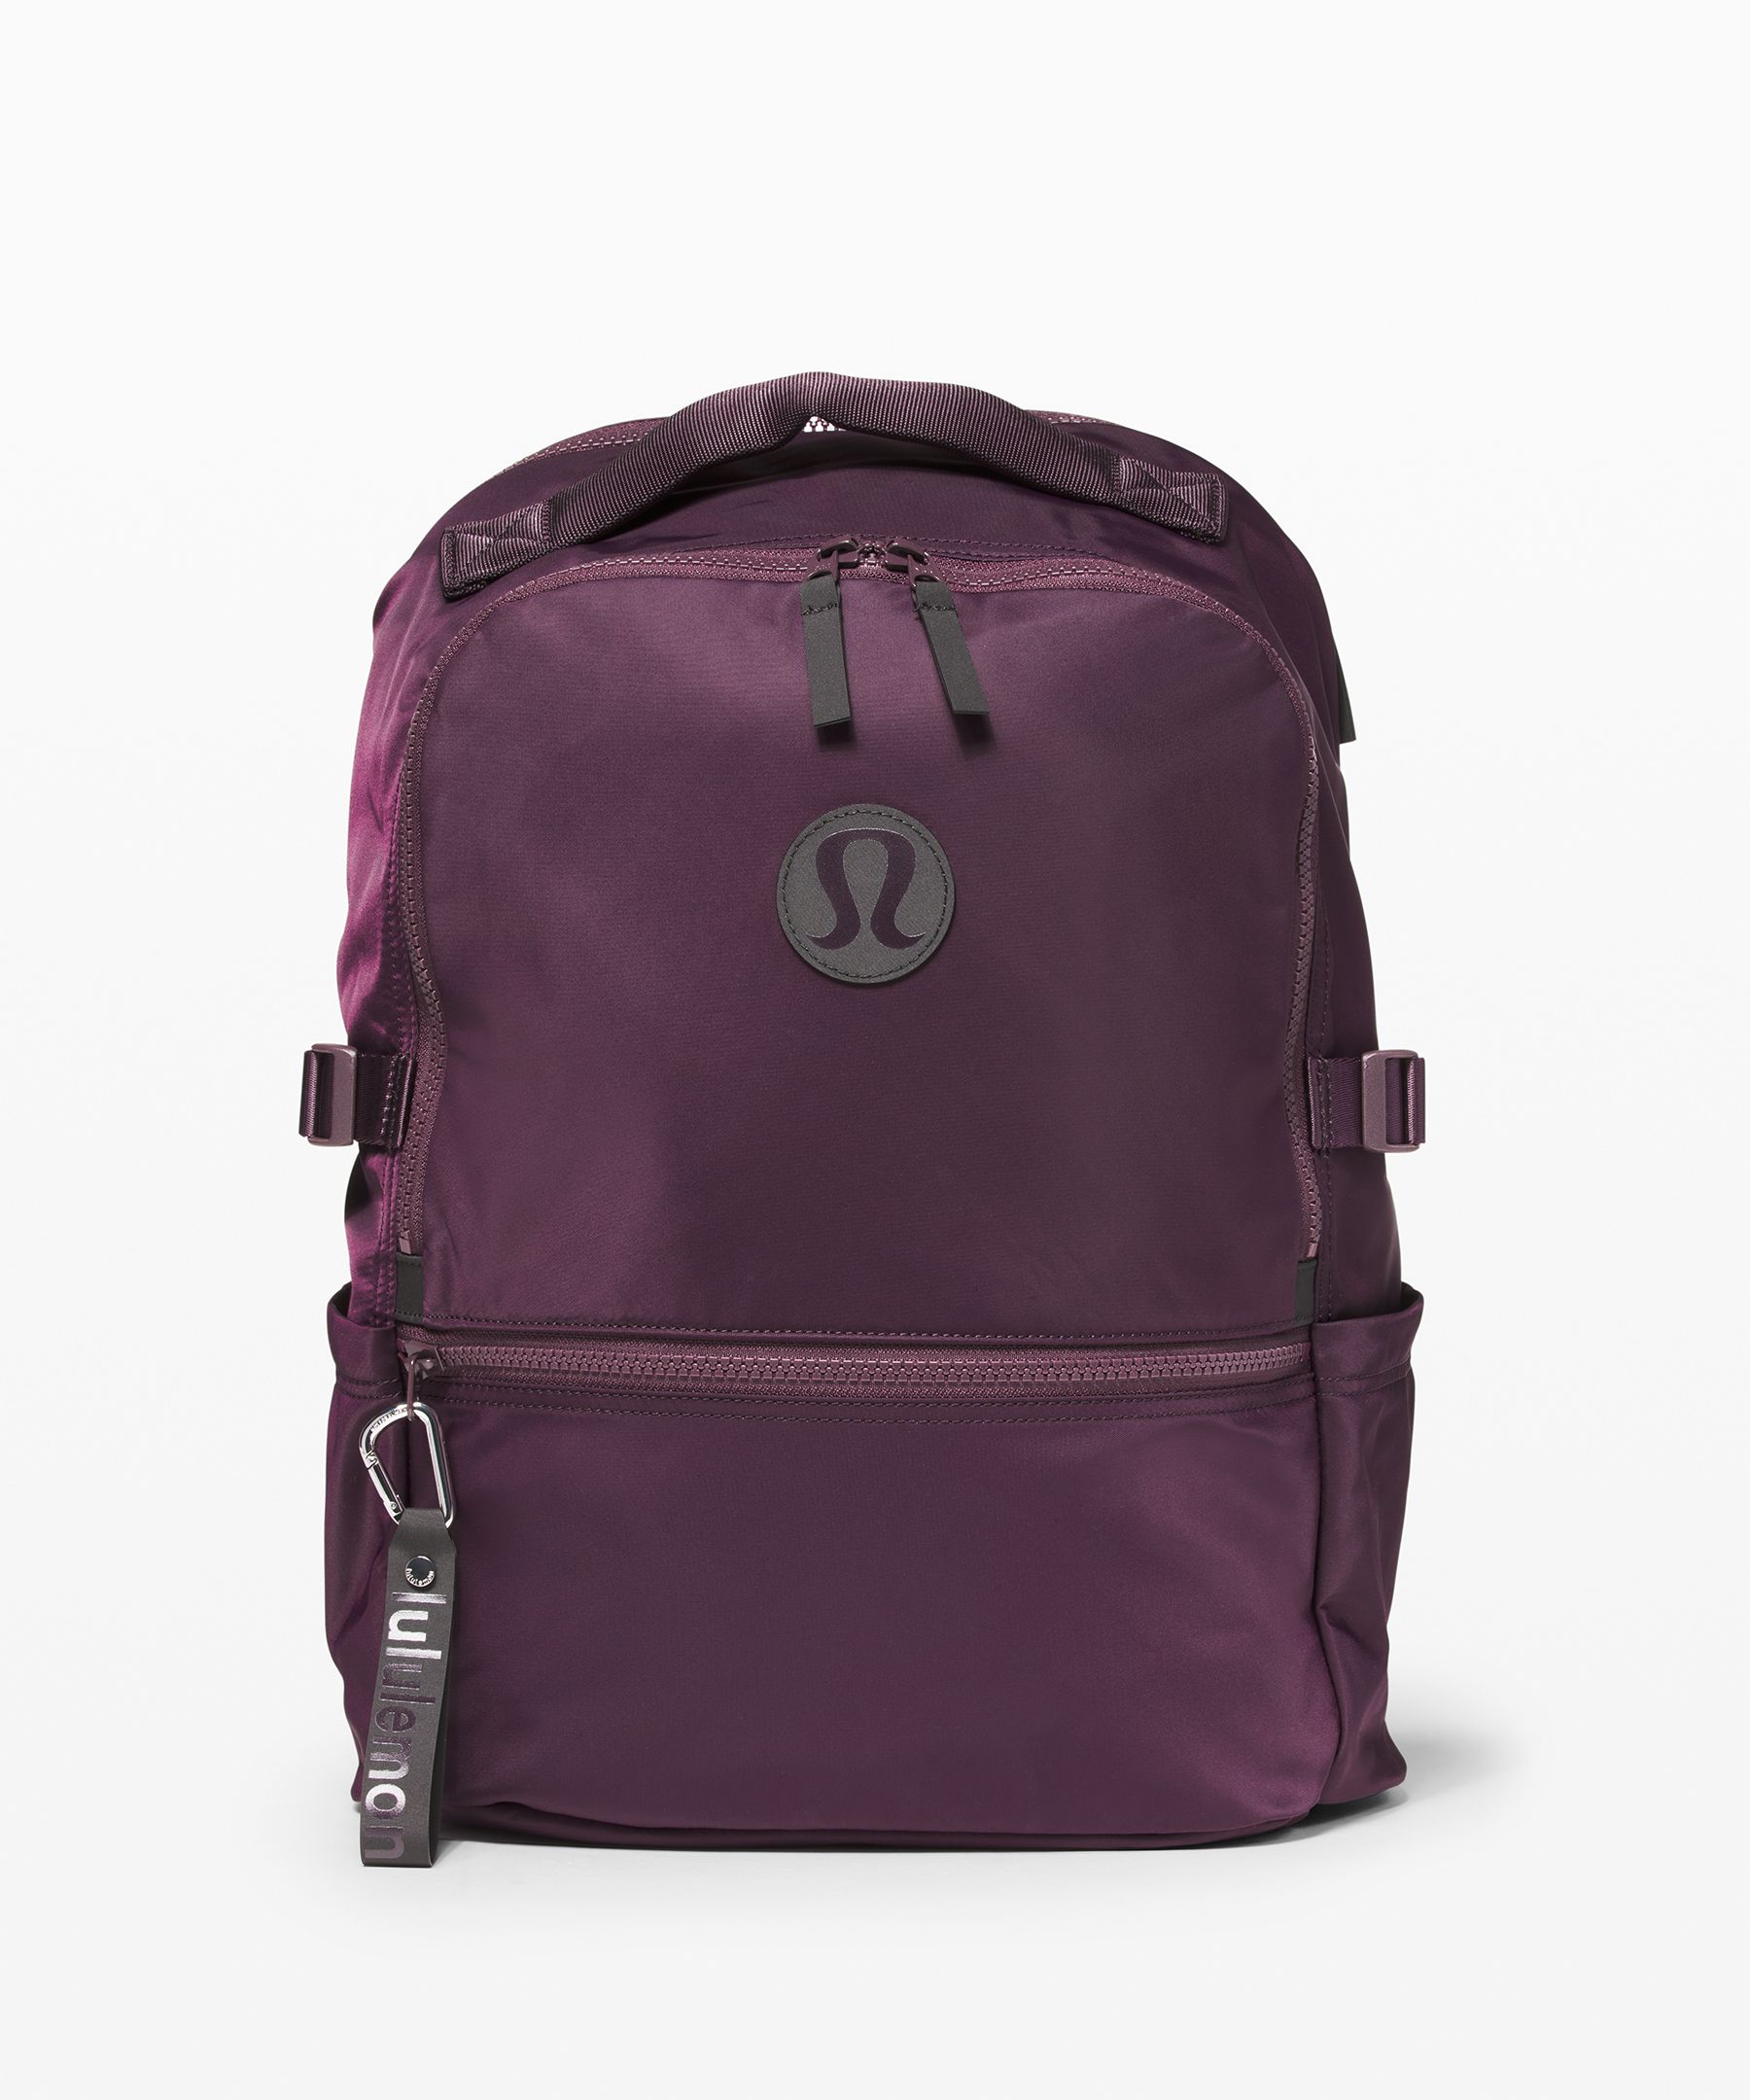 lululemon backpack pink